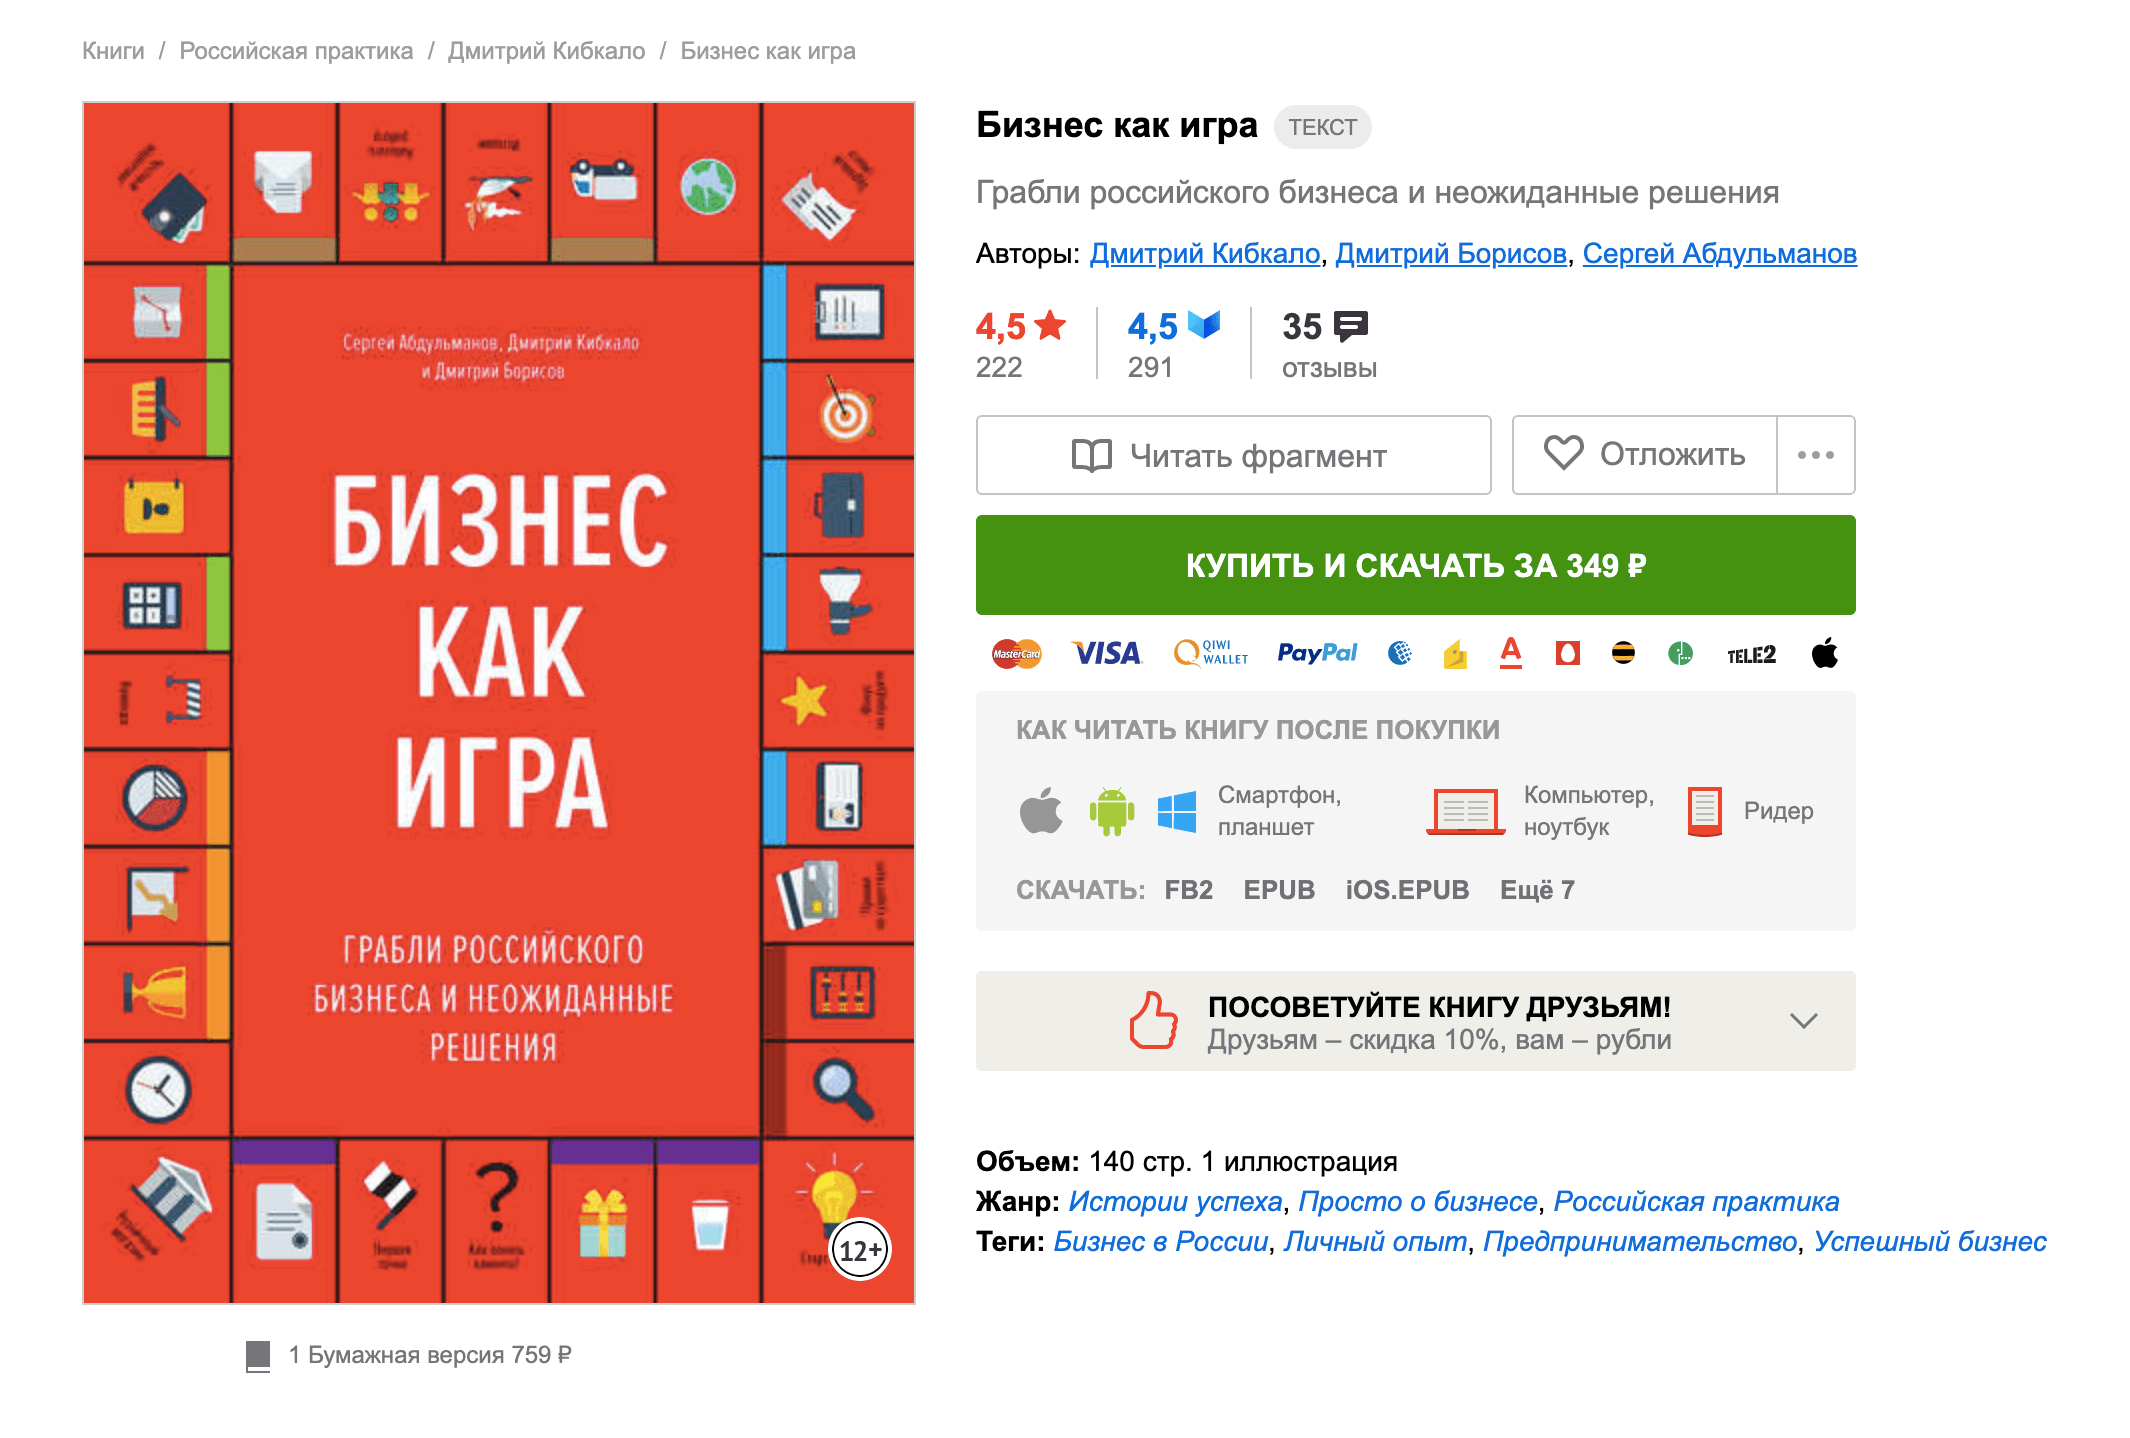 На «Литресе» электронная книга «Бизнес как игра» стоит 349 рублей, в корпоративной библиотеке я прочитала ее бесплатно